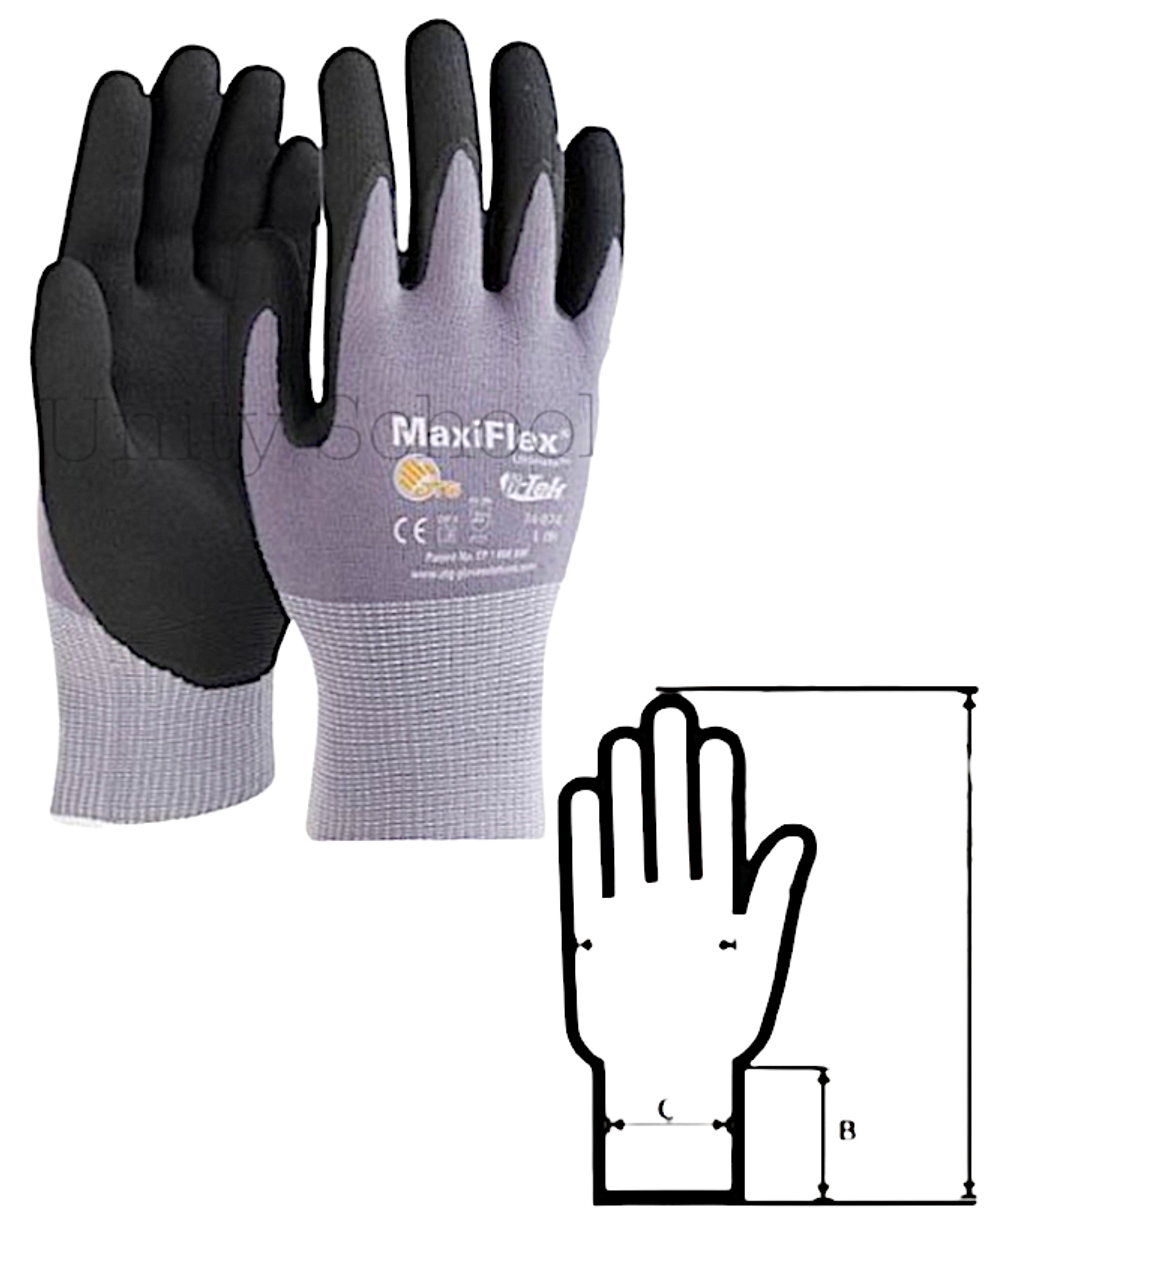 Nitrile Coated Work Gloves (Large, Size 9)